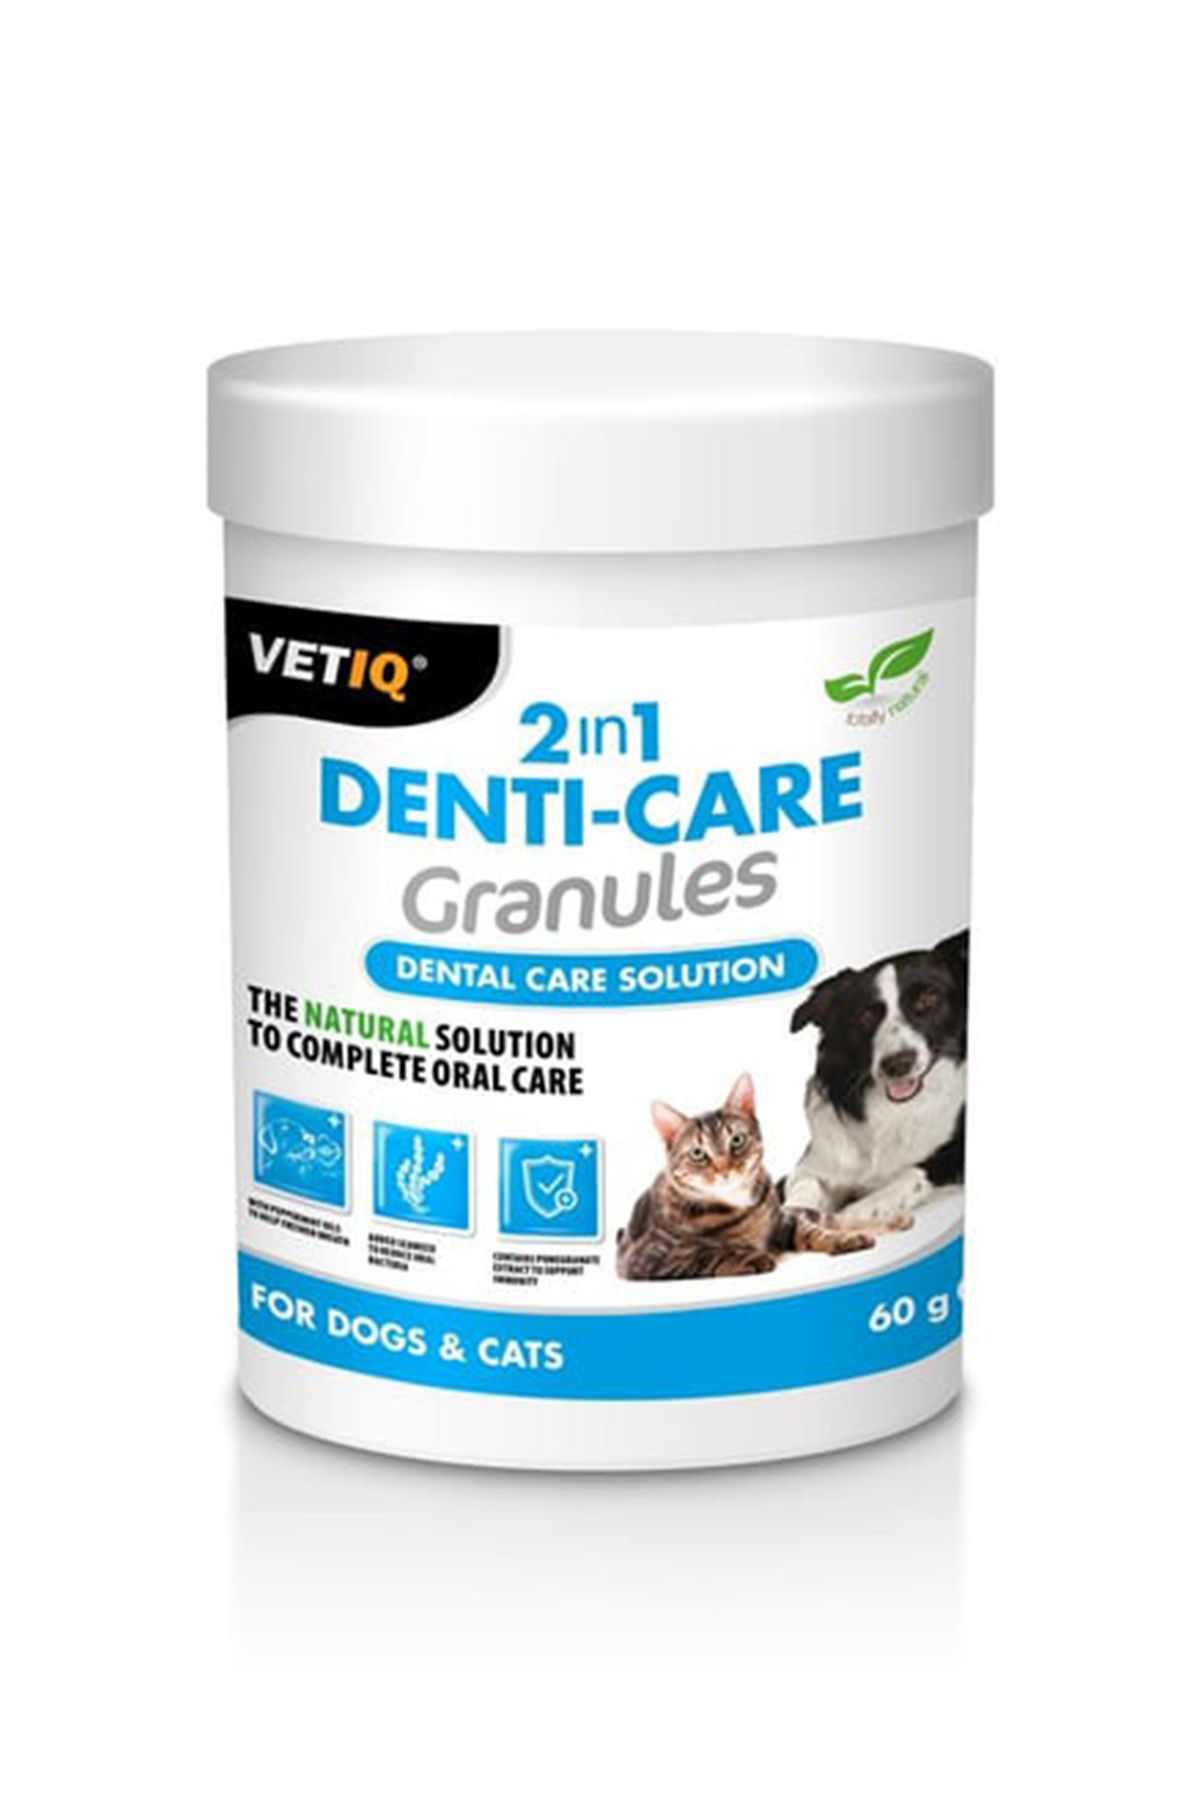 Vetiq 2in1 Denti-Care Granules Cat&Dog 60 gr - Kedi&Köpek Dental Bakım Granül